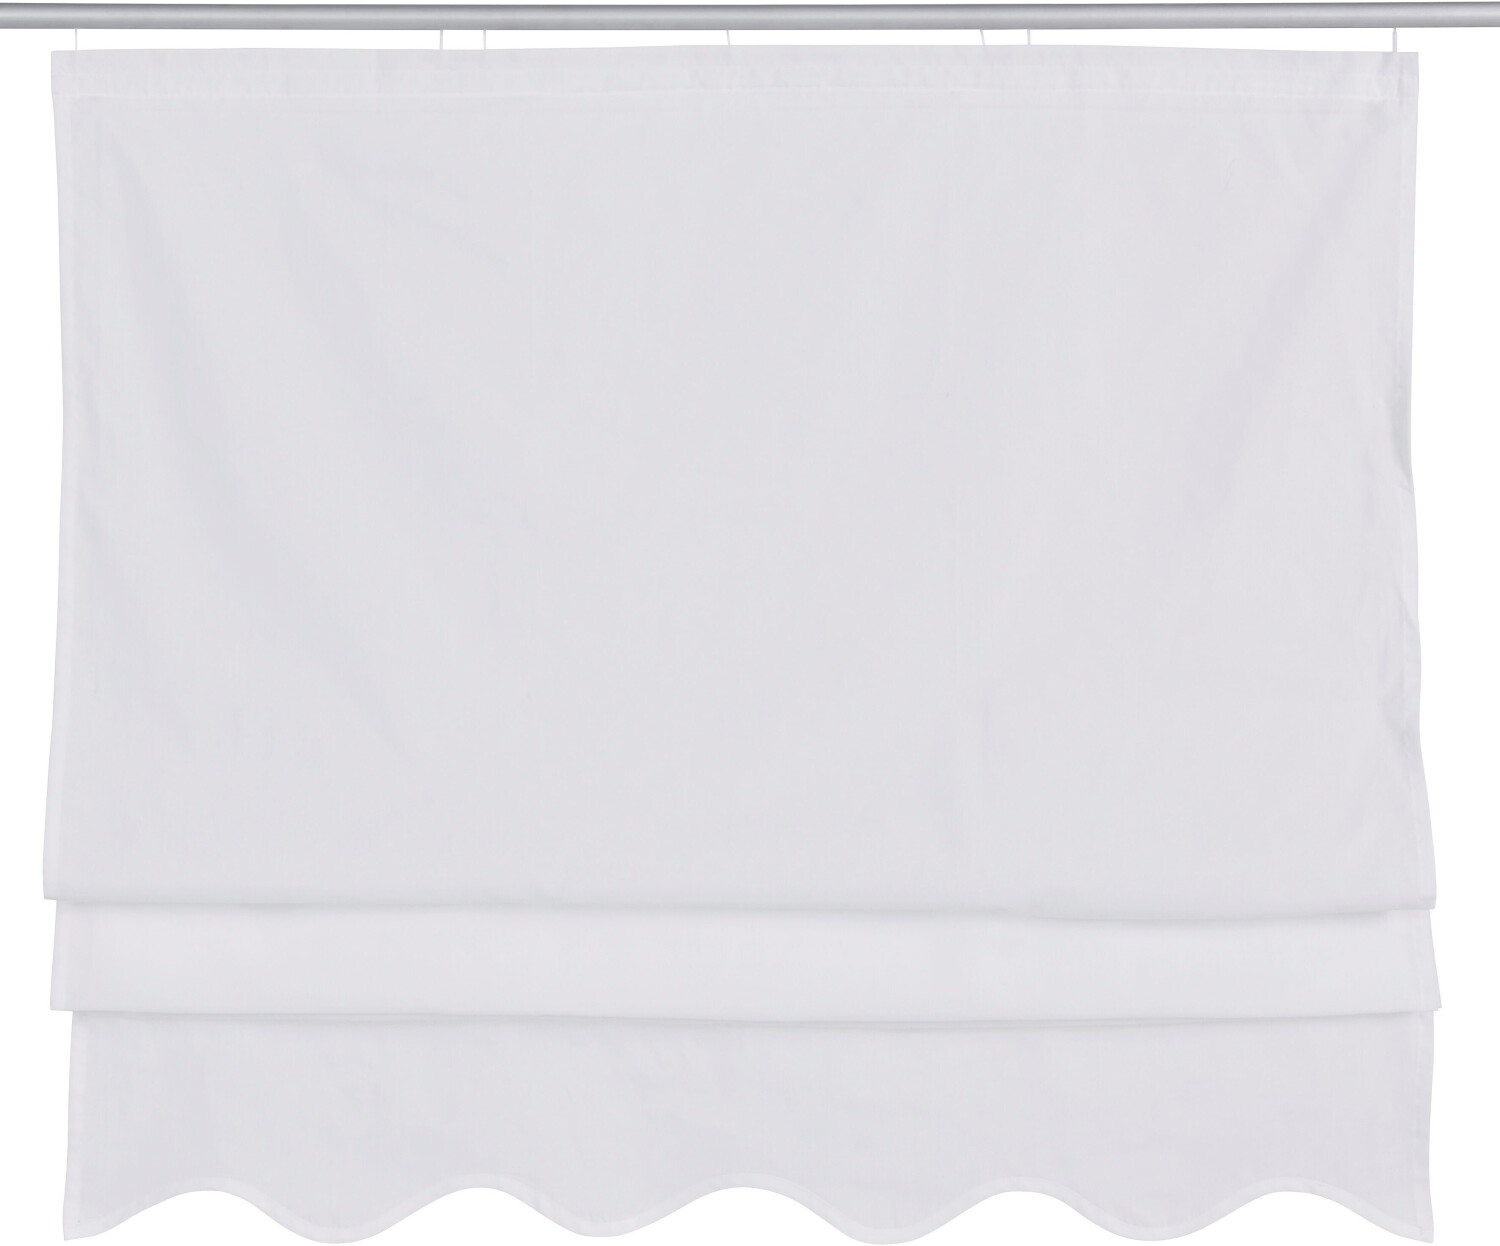 Home Affaire Florenz 45x140cm mit Klettband weiß ab 23,99 € |  Preisvergleich bei